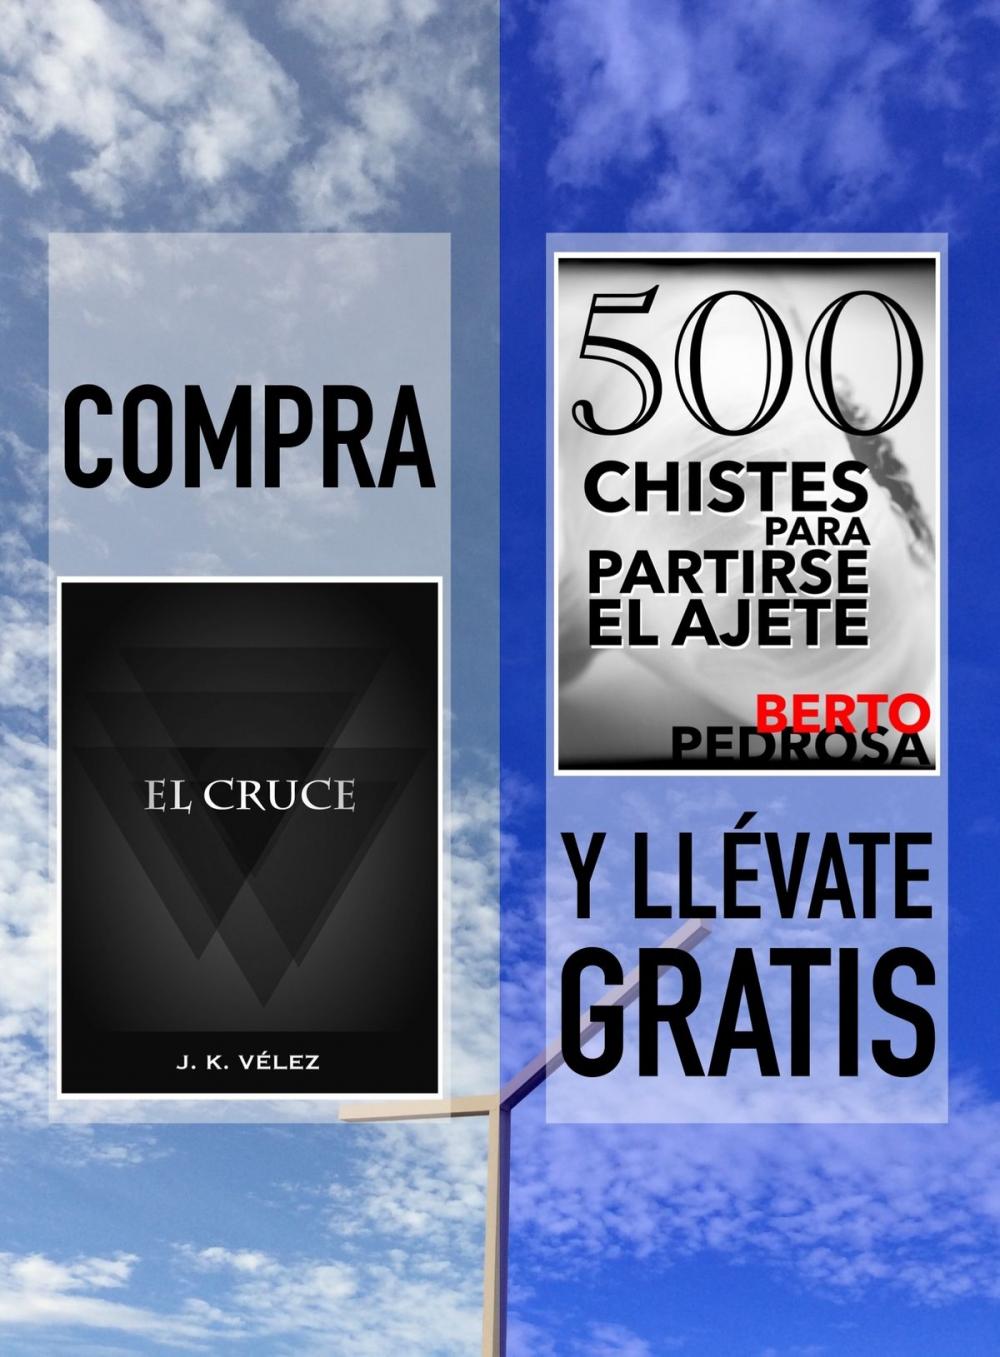 Big bigCover of Compra "El Cruce" y llévate gratis "500 Chistes para partirse el ajete"